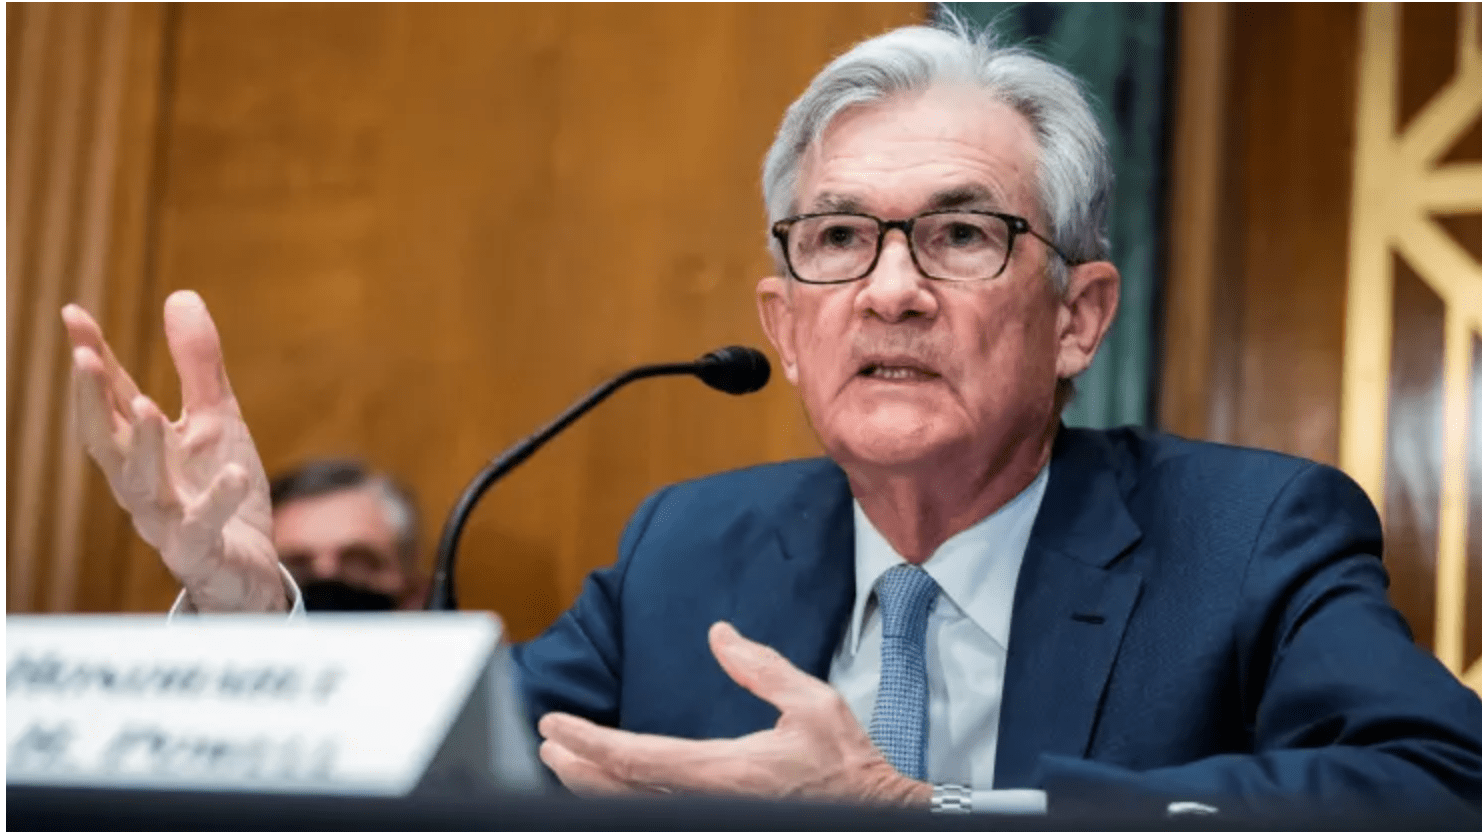 Federal Reserve, Banking Concerns, Risk Management Take Center Stage